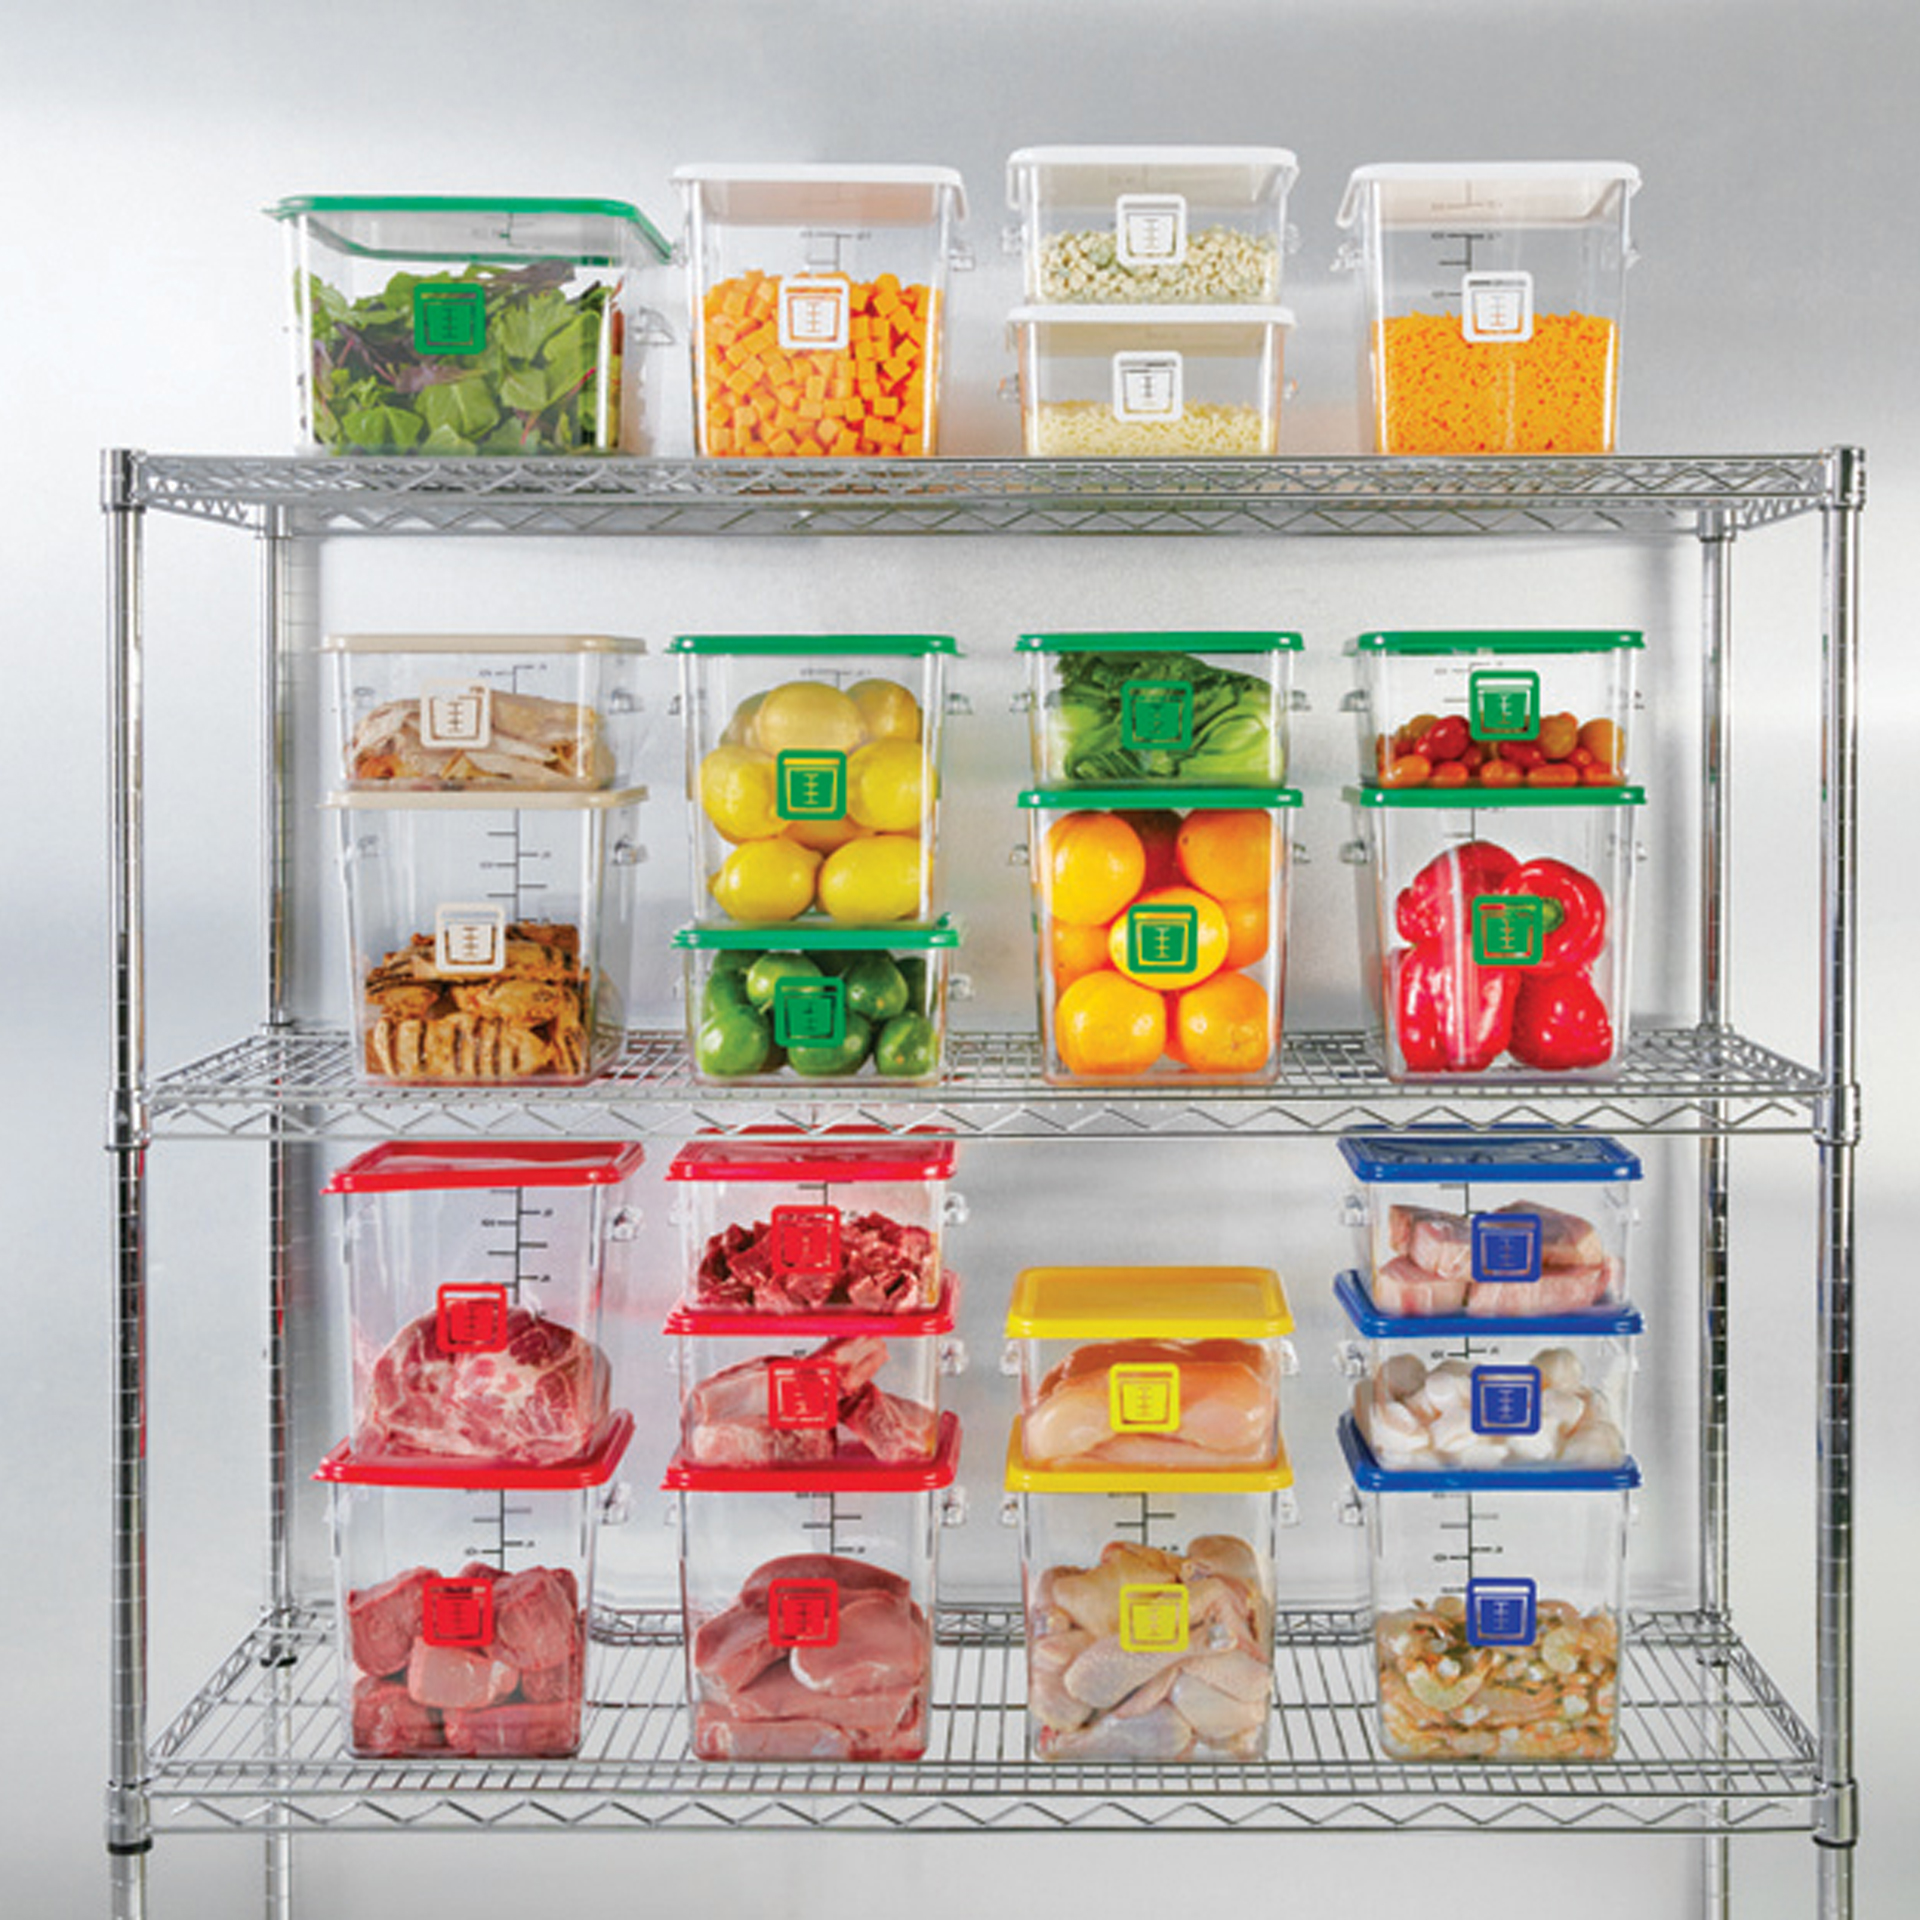 กล่องเก็บวัตถุดิบอาหารสี่เหลี่ยม Color-Coded Square Container Clear ขนาด 8 qt สีน้ำตาล